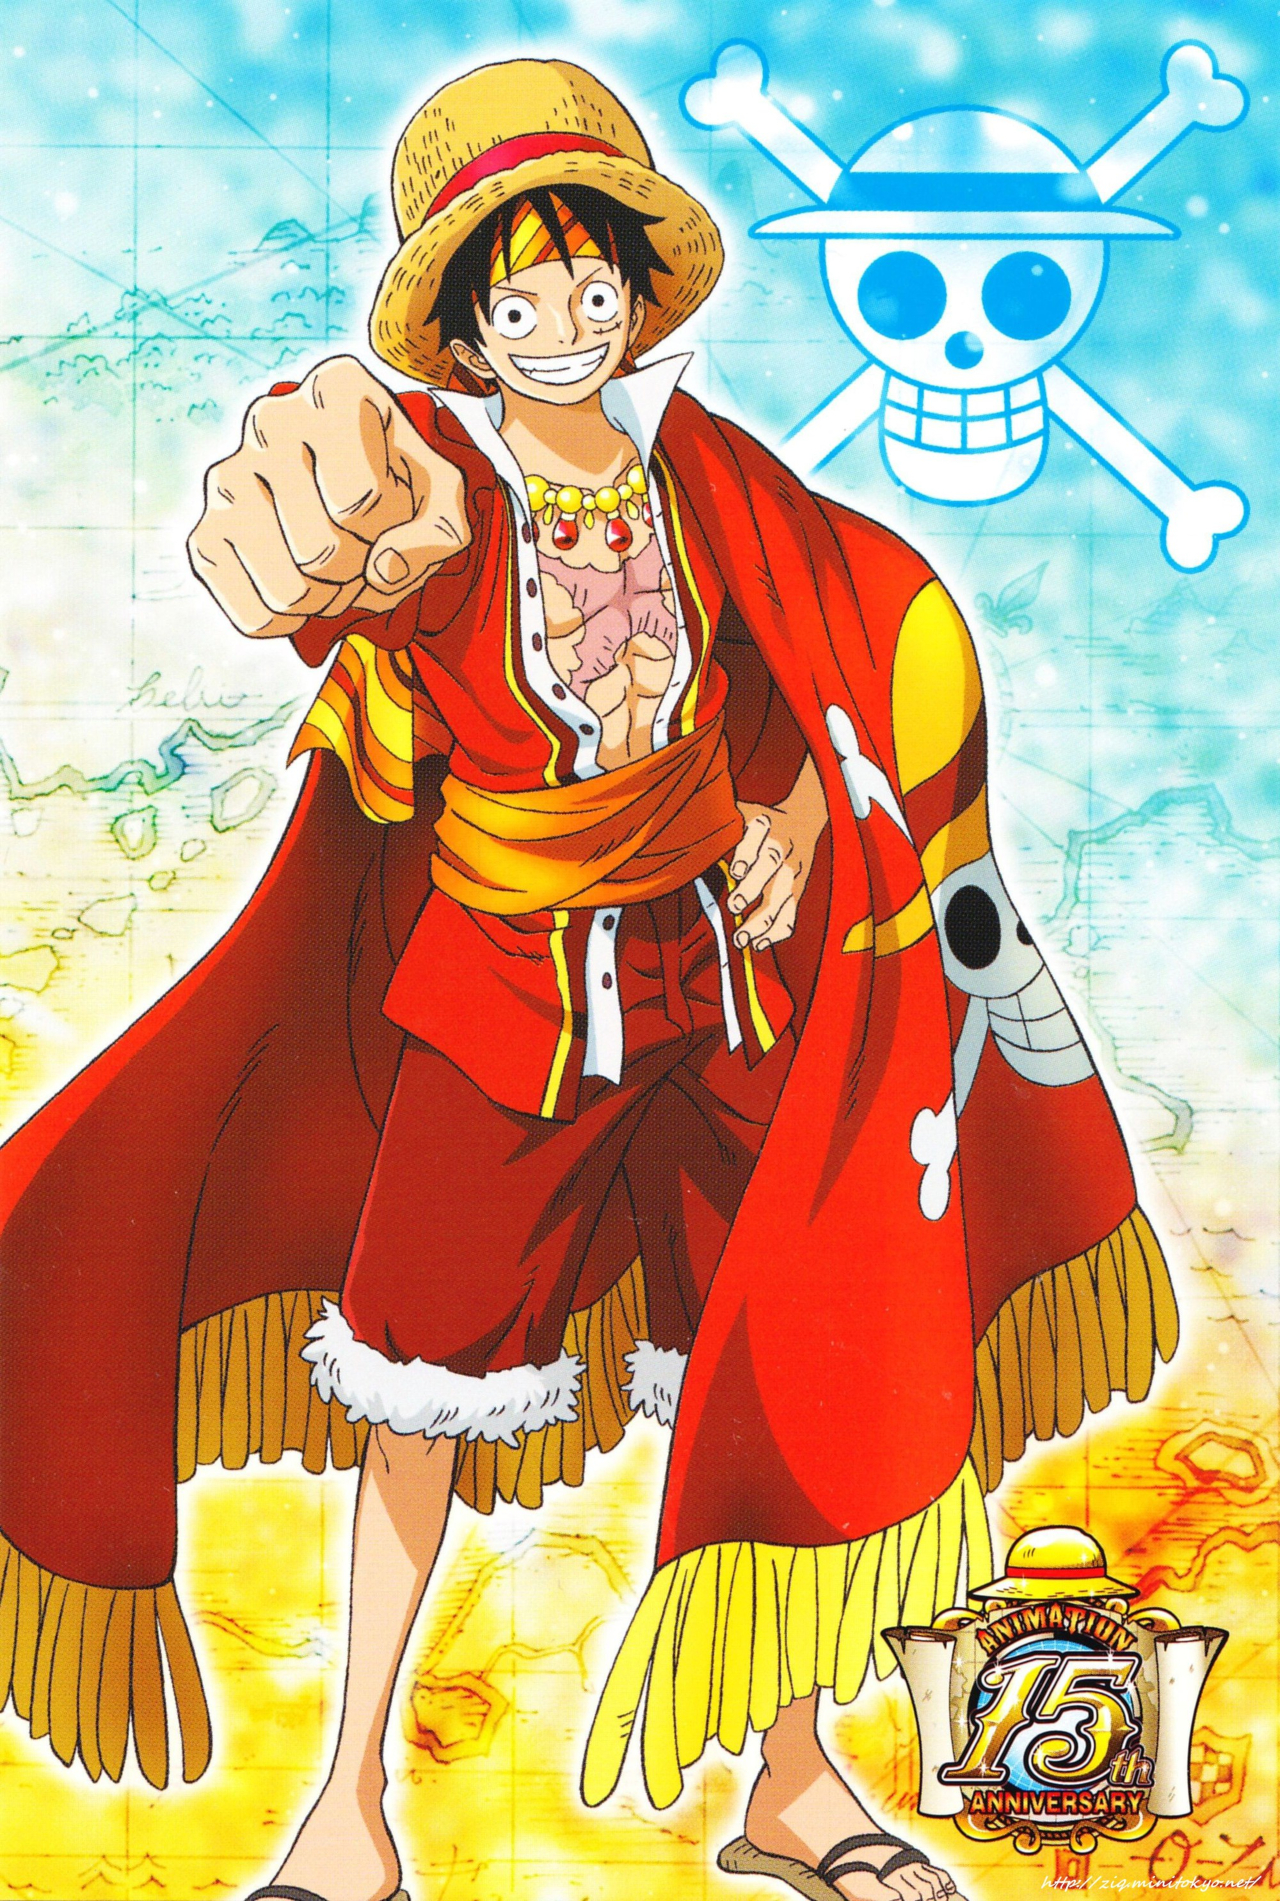 Hình ảnh Luffy cực ngầu, ảnh Luffy dễ thương cute đẹp nhất - META.vn